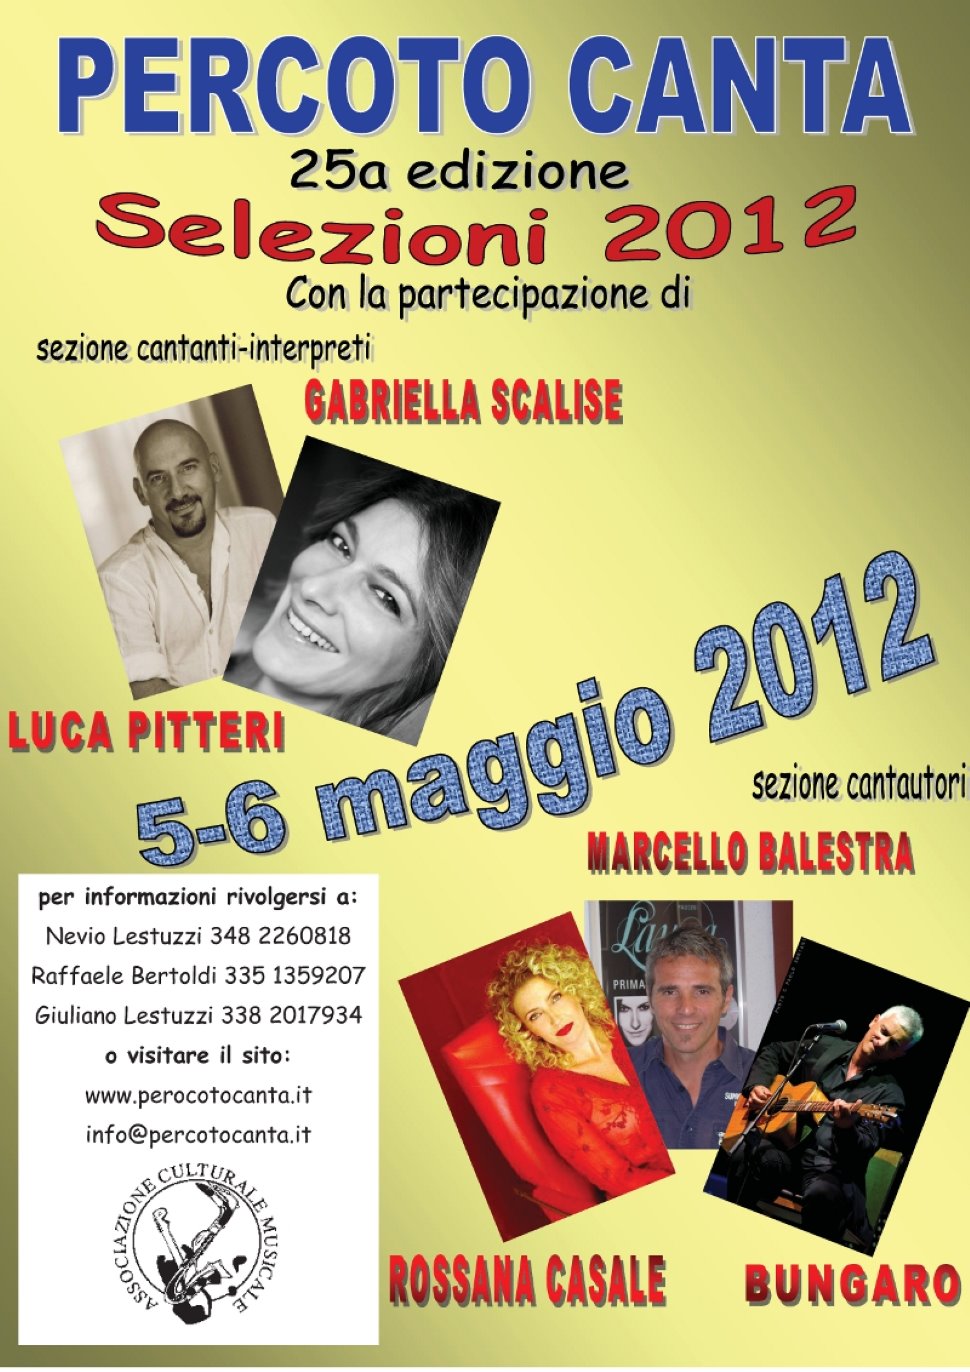 PERCOTO CANTA 2012 -25a Edizione